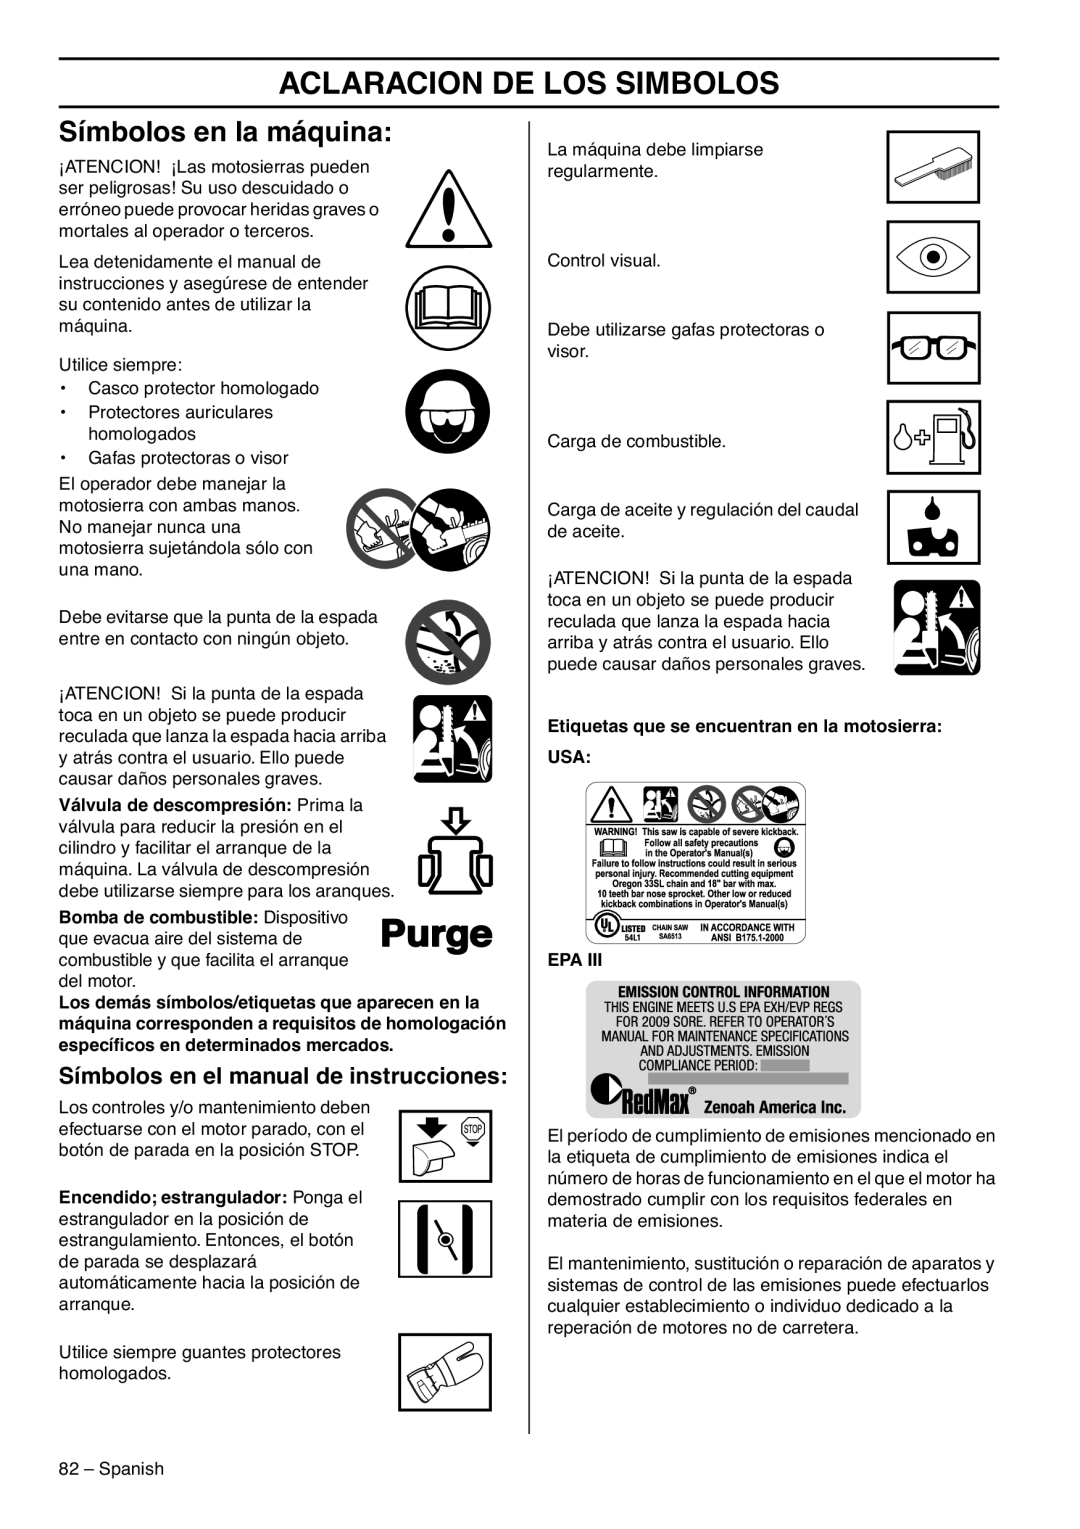 RedMax G5300 Aclaracion De Los Simbolos, Símbolos en la máquina, Símbolos en el manual de instrucciones 